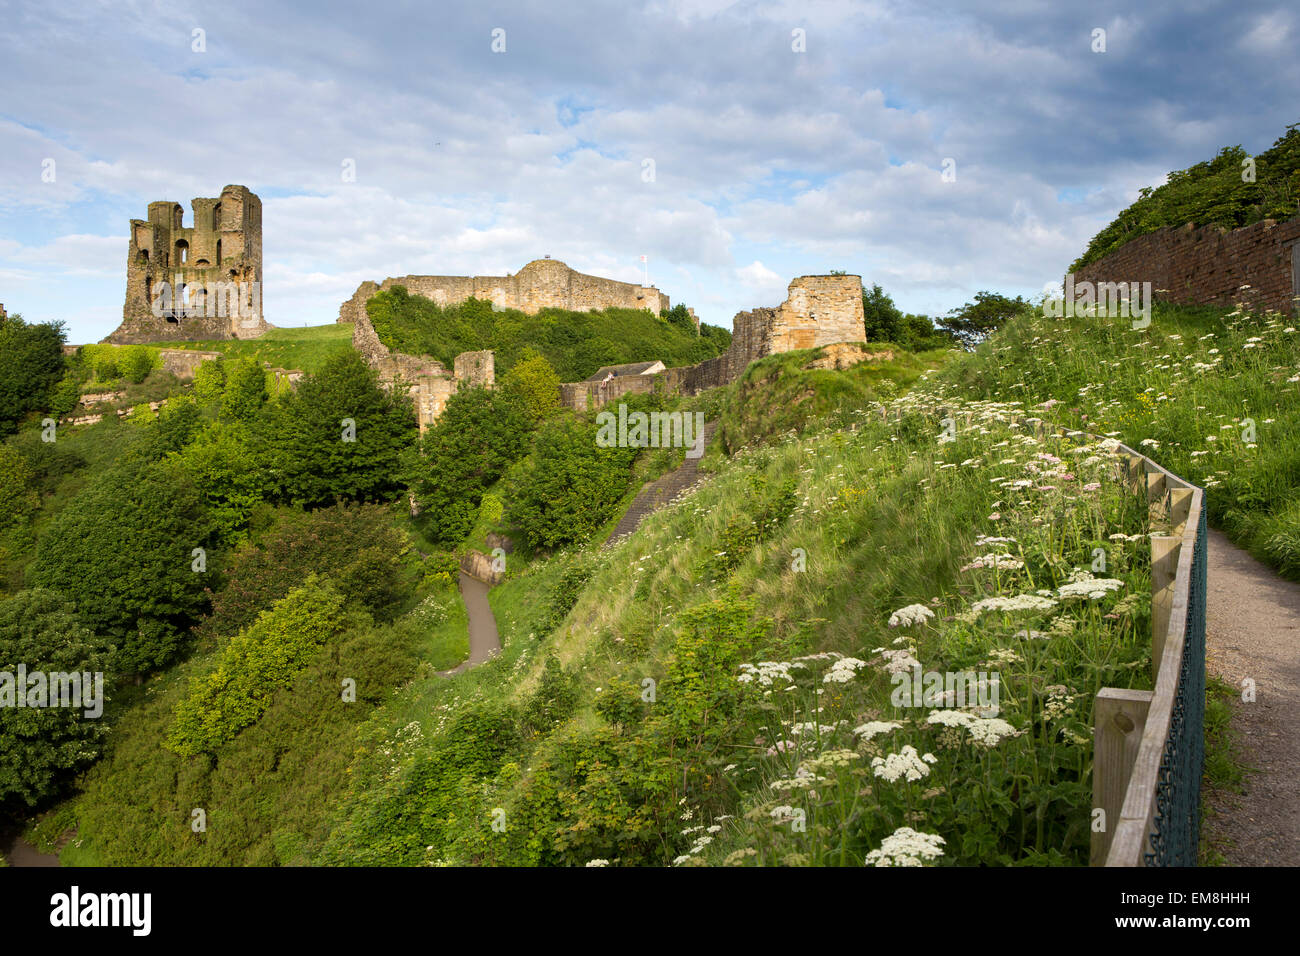 Regno Unito, Inghilterra, Yorkshire, Scarborough, il castello di mantenere e rovine sulla collina Foto Stock